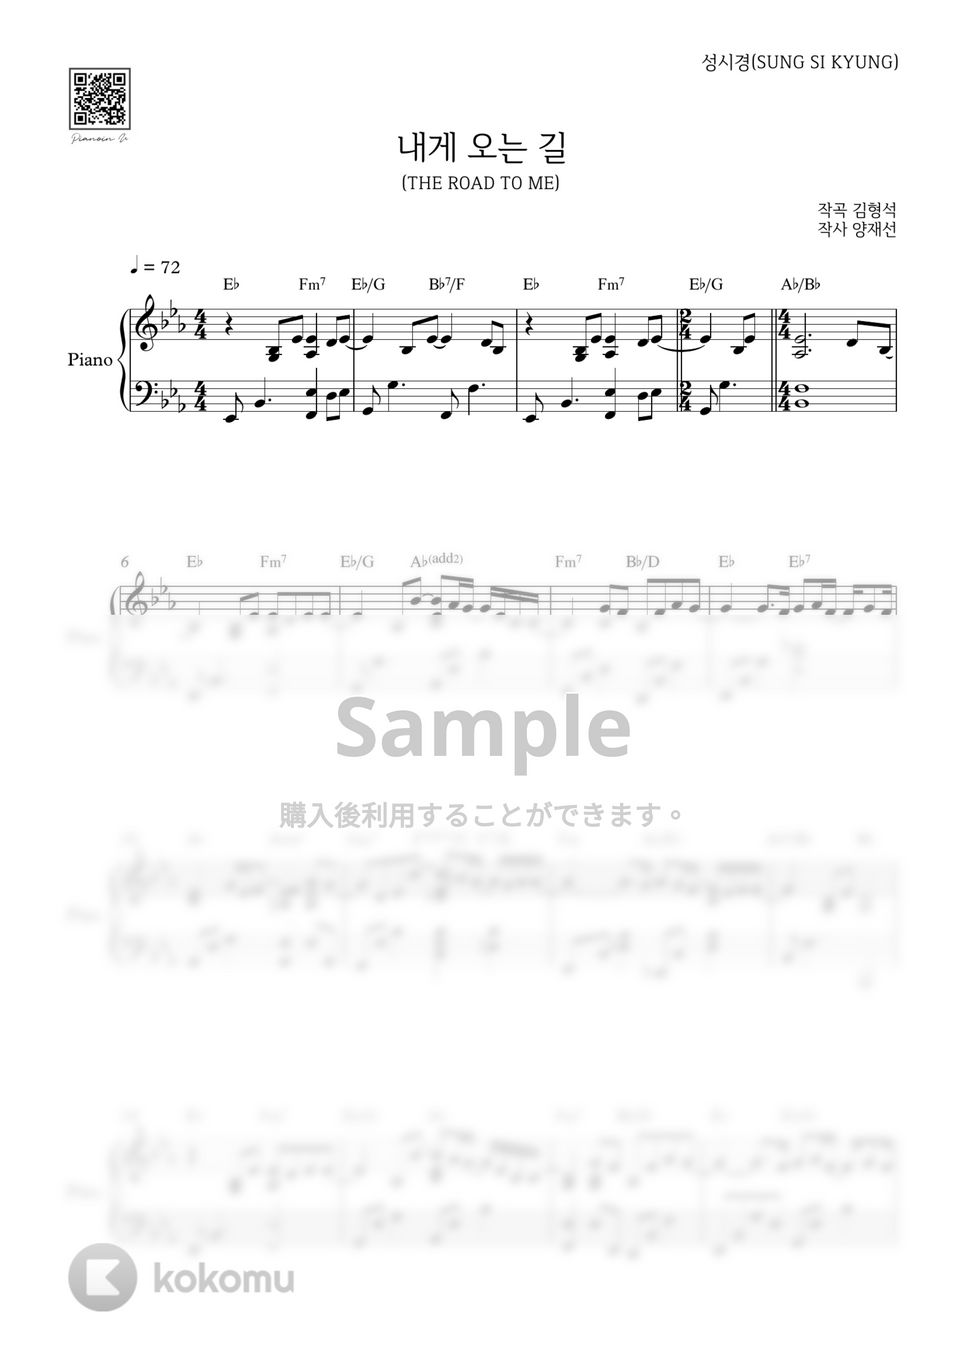 ソン・シギョン - 僕に来る道 (The Road To Me) by PIANOiNU